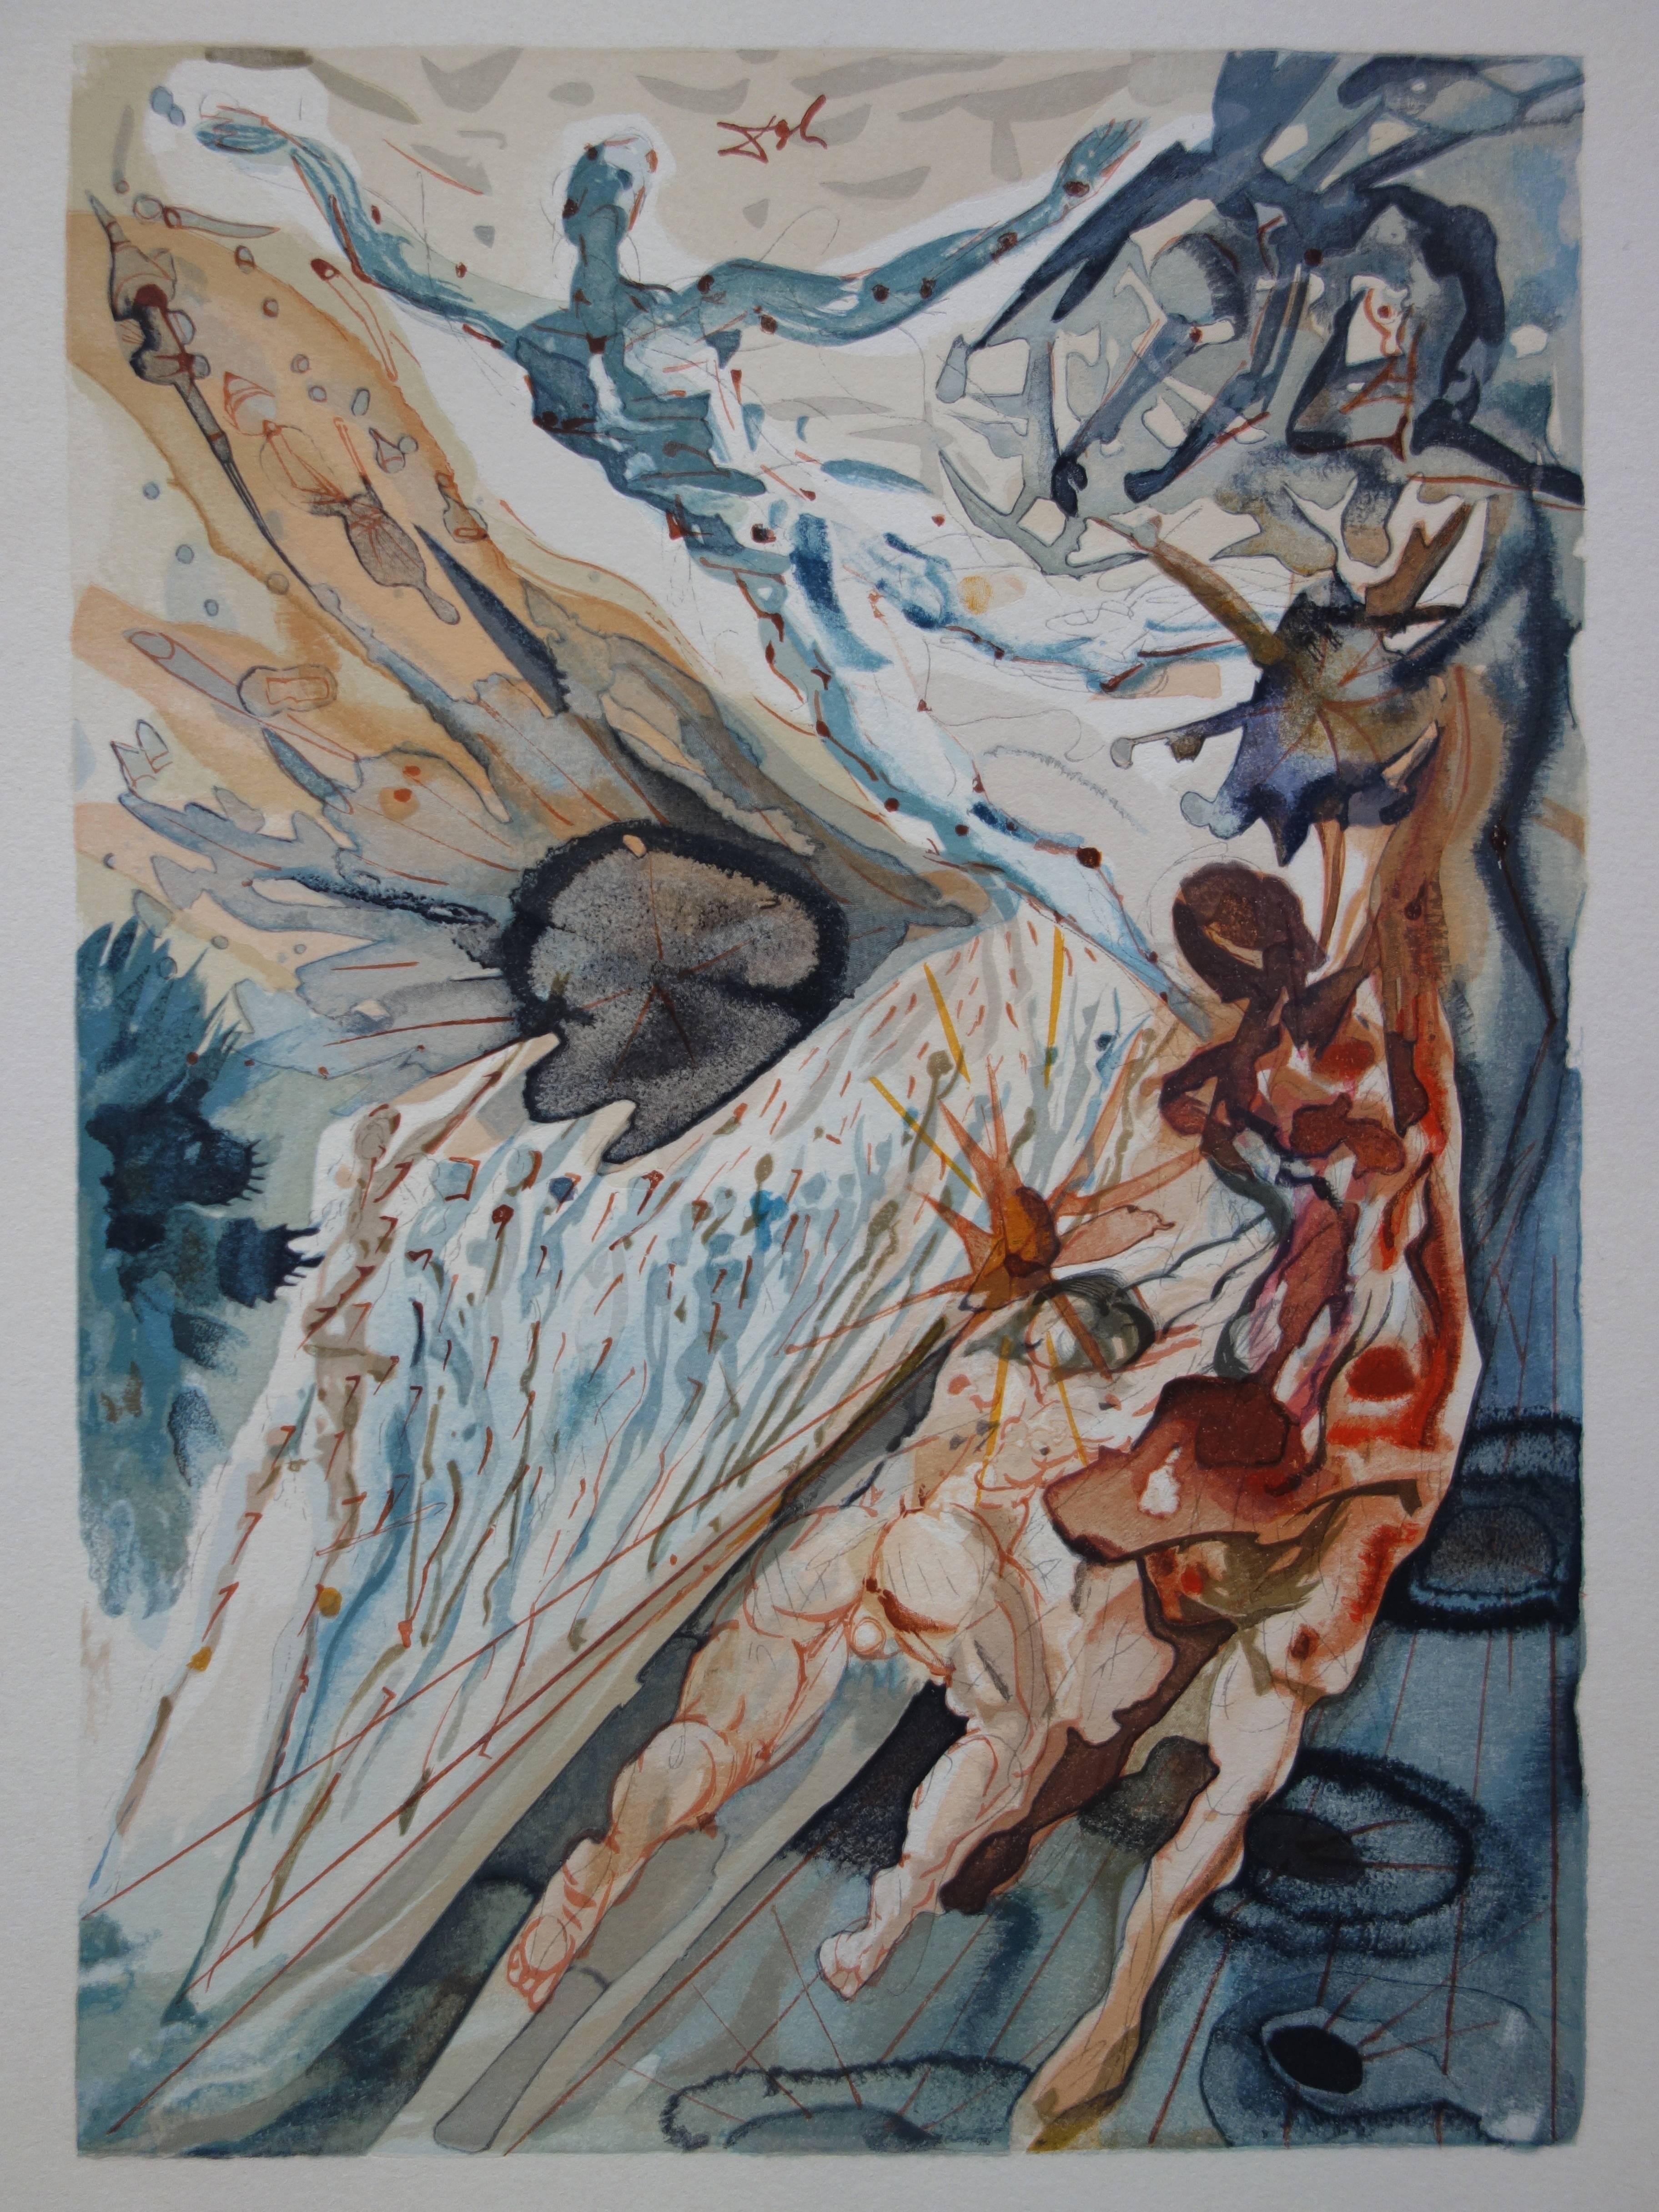 Purgatory 26 - Encounter with Two Groups of the Lusty - Taille sur bois en couleur - Surréalisme Print par Salvador Dalí